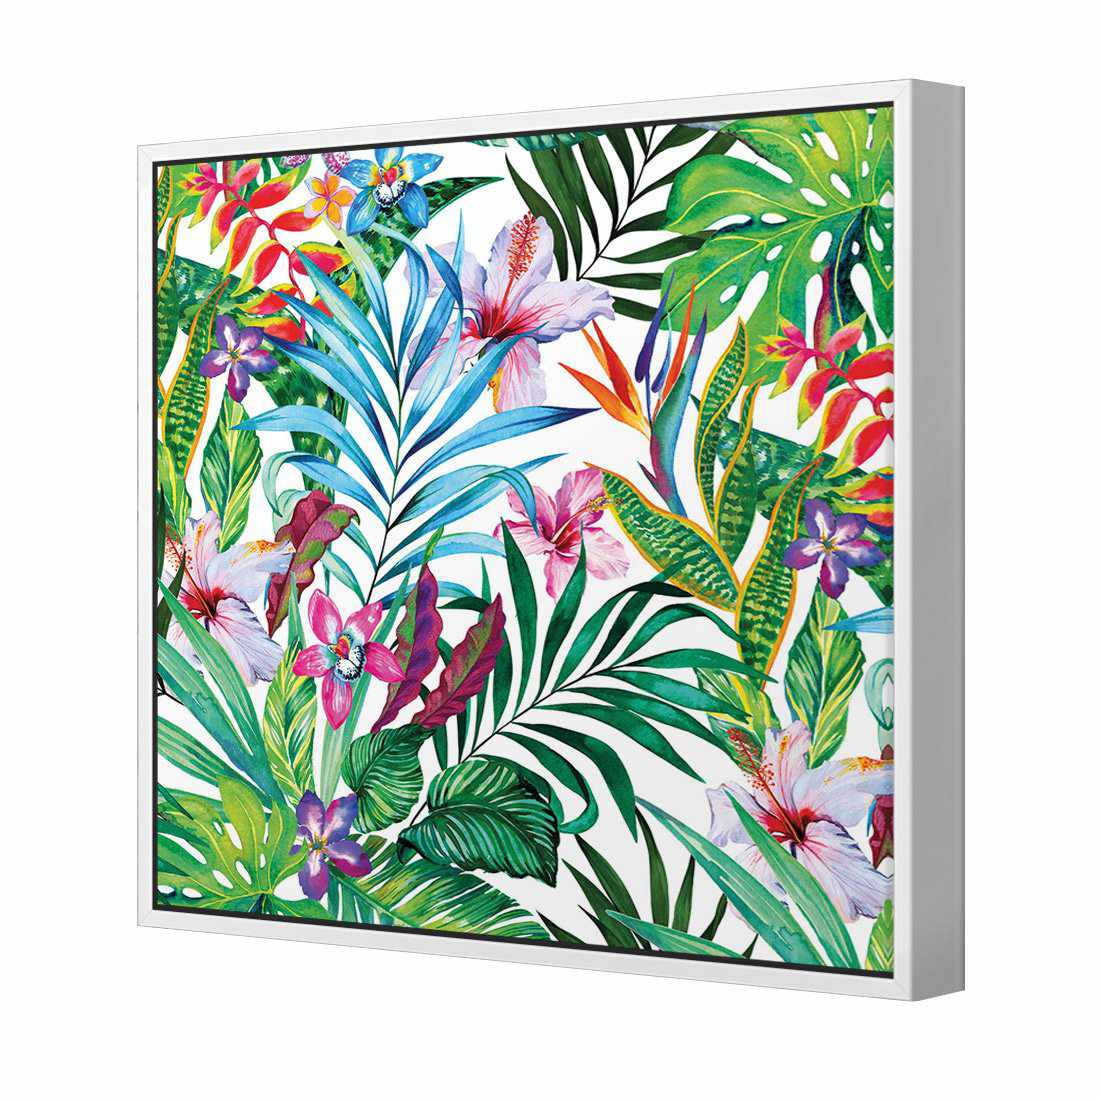 Jungle At Noon Canvas Art-Canvas-Wall Art Designs-30x30cm-Canvas - White Frame-Wall Art Designs